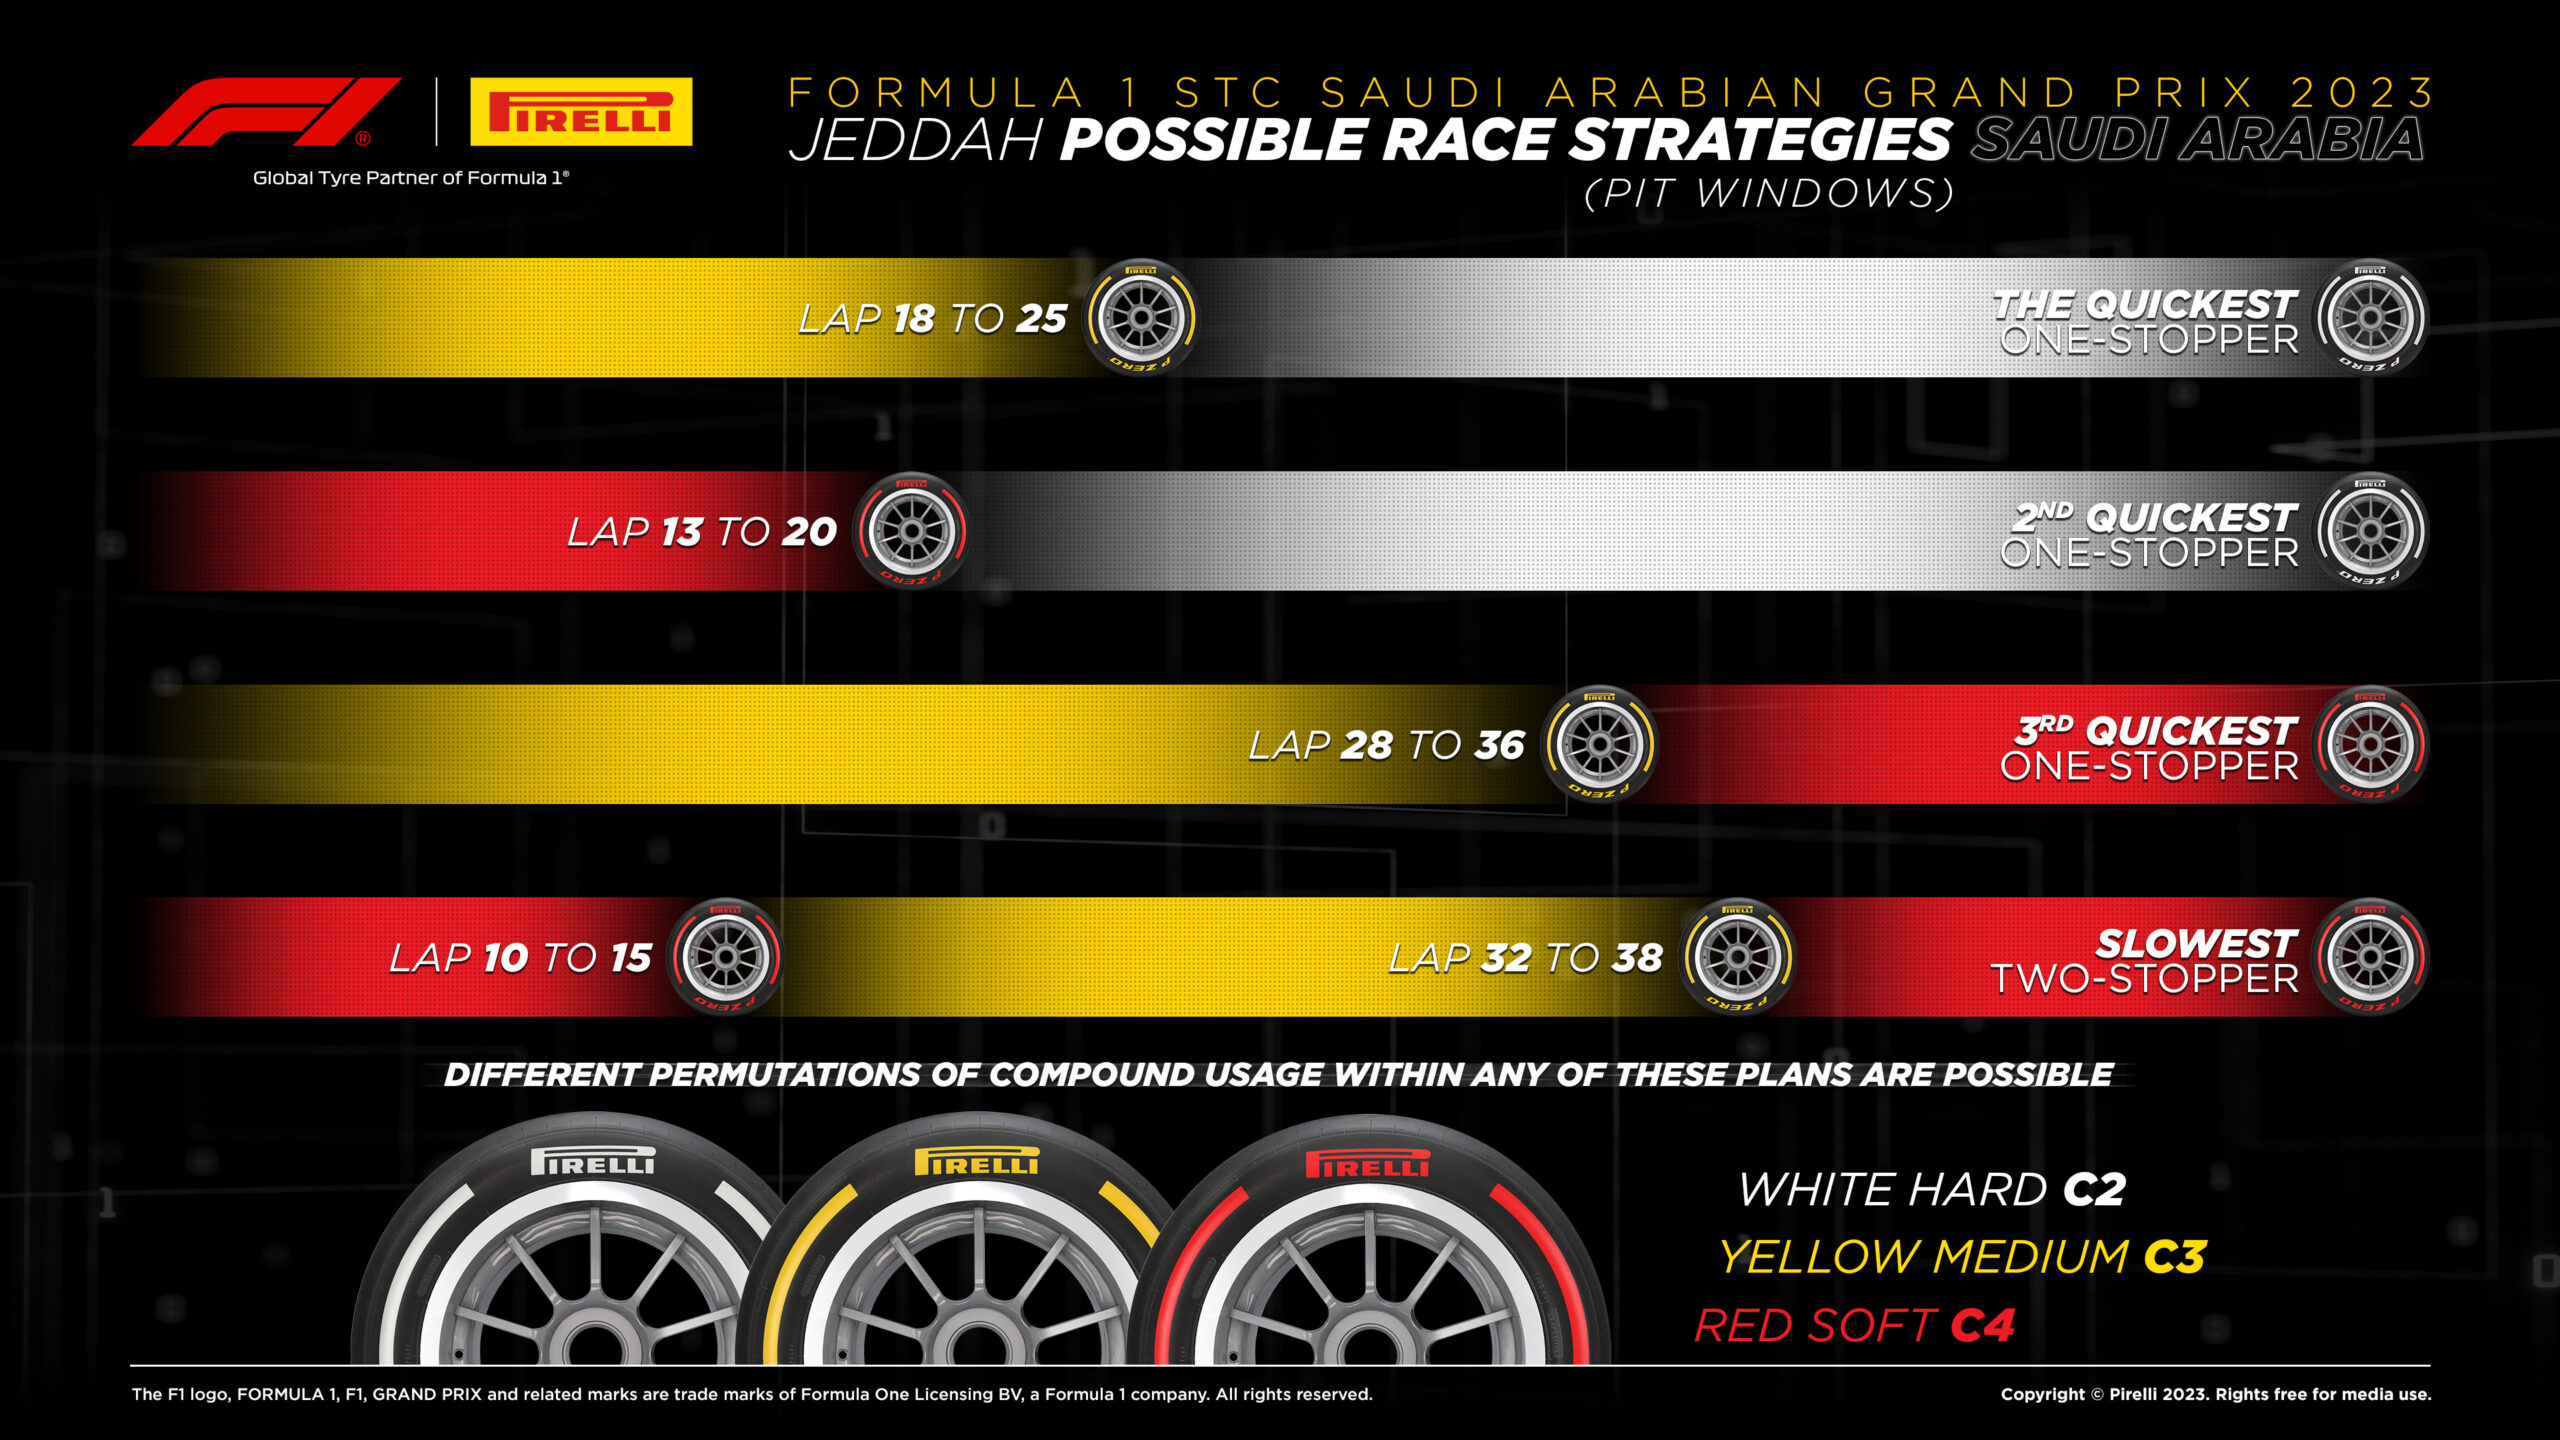 Pirelli, Strategia e soste - Gp Arabia Saudita F1 2023, Jeddah